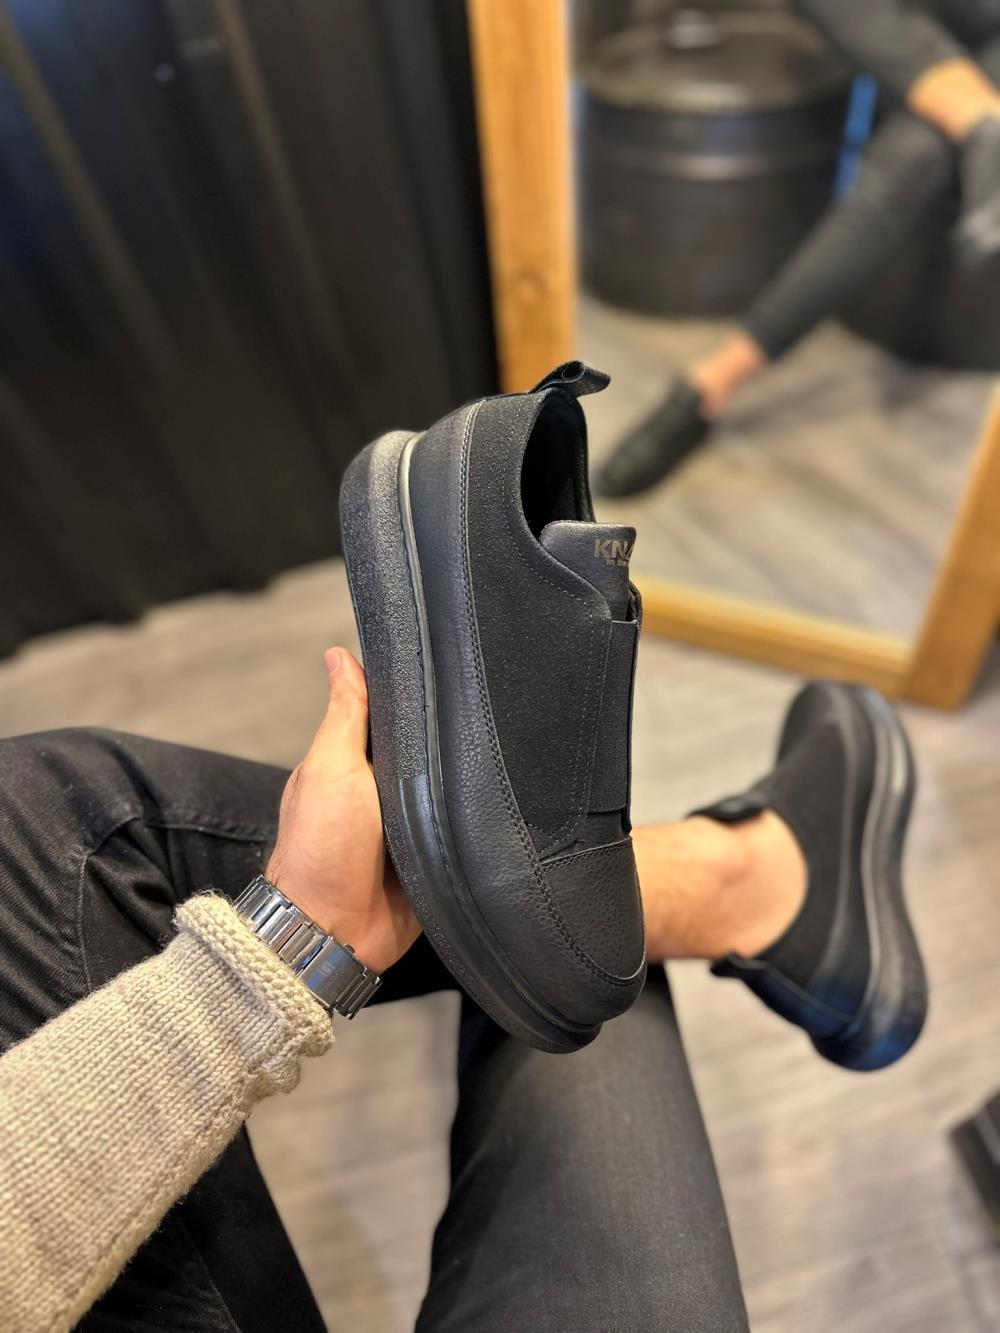 CLZ941  Sneakers Ayakkabı  Siyah (Siyah Taban)